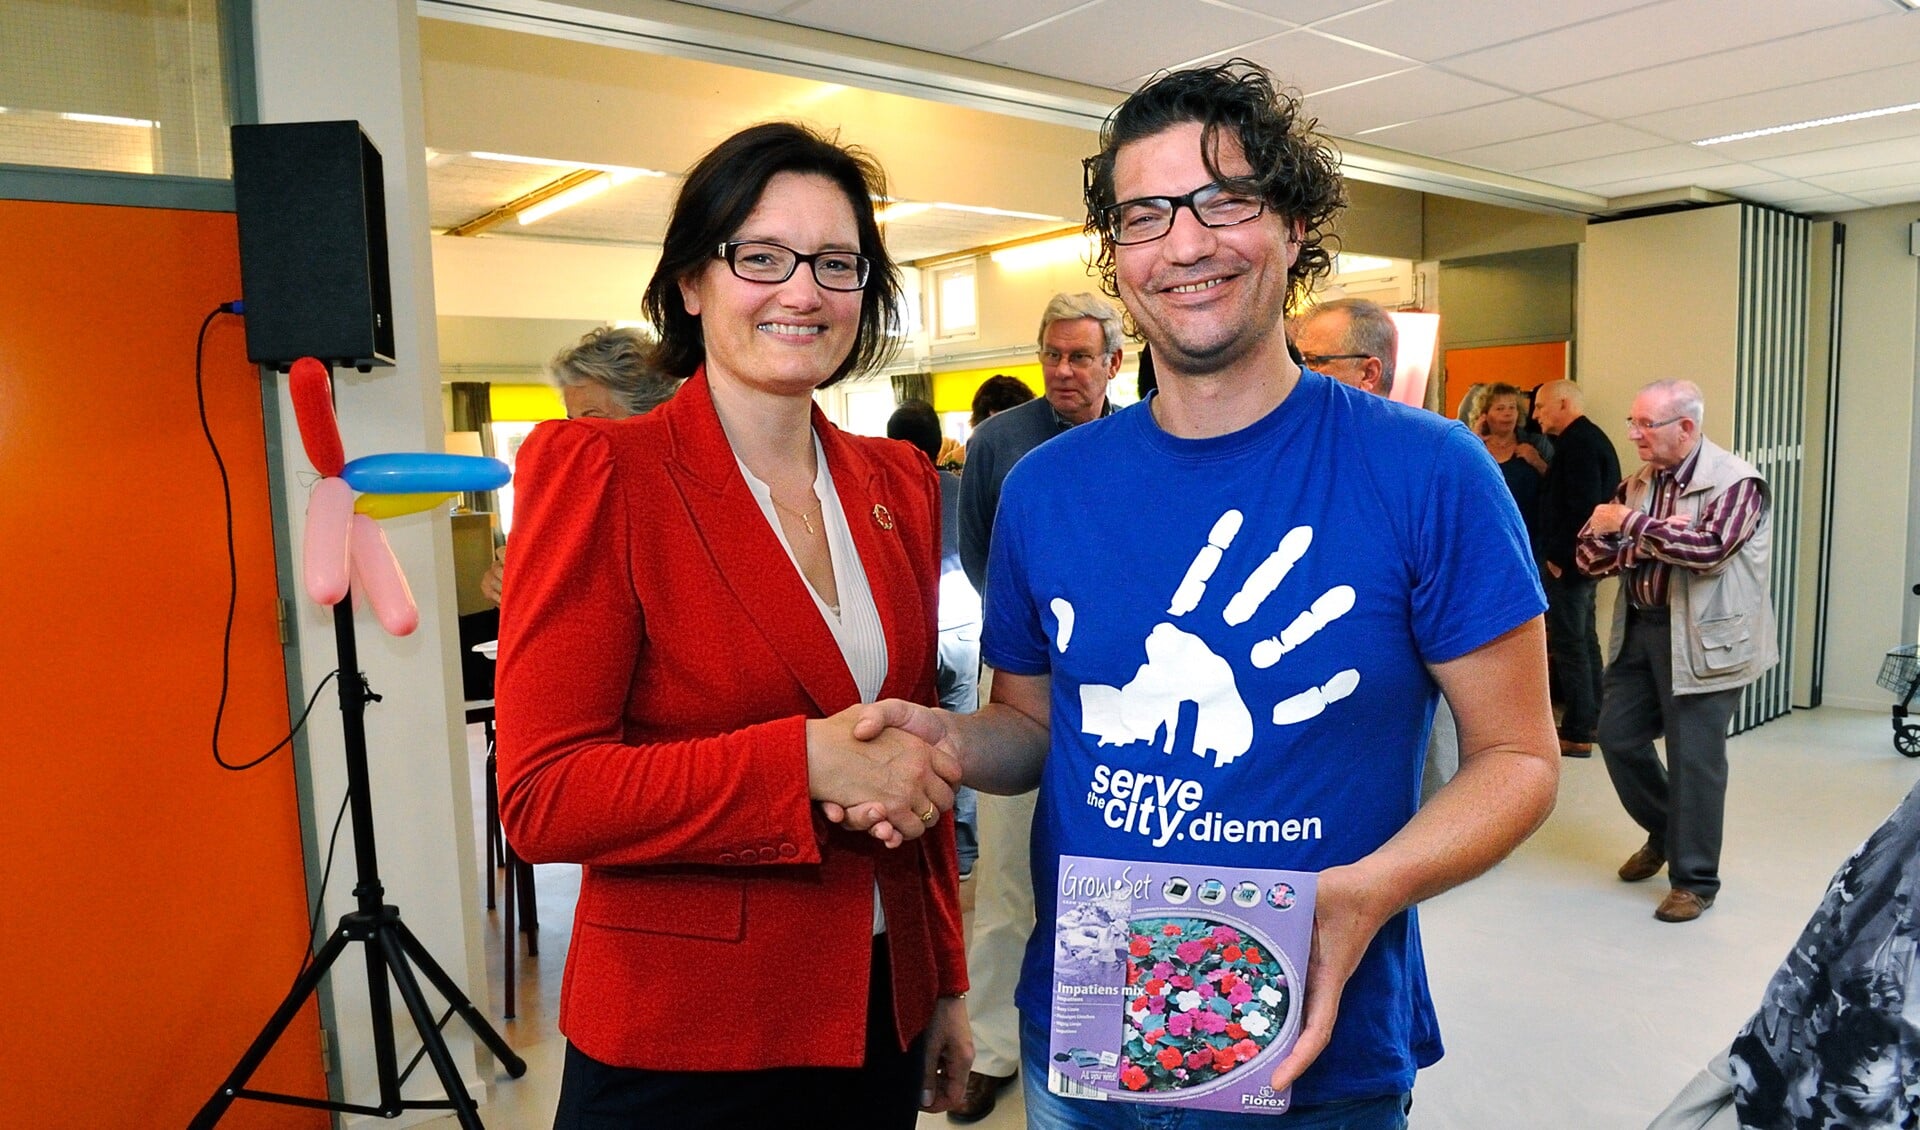 Wethouder Maïta van der Mark feliciteert Marten van den Poll, bestuurslid van StC Diemen, met de eerste prijs in de actie 'Kleine daad, groot resultaat'.